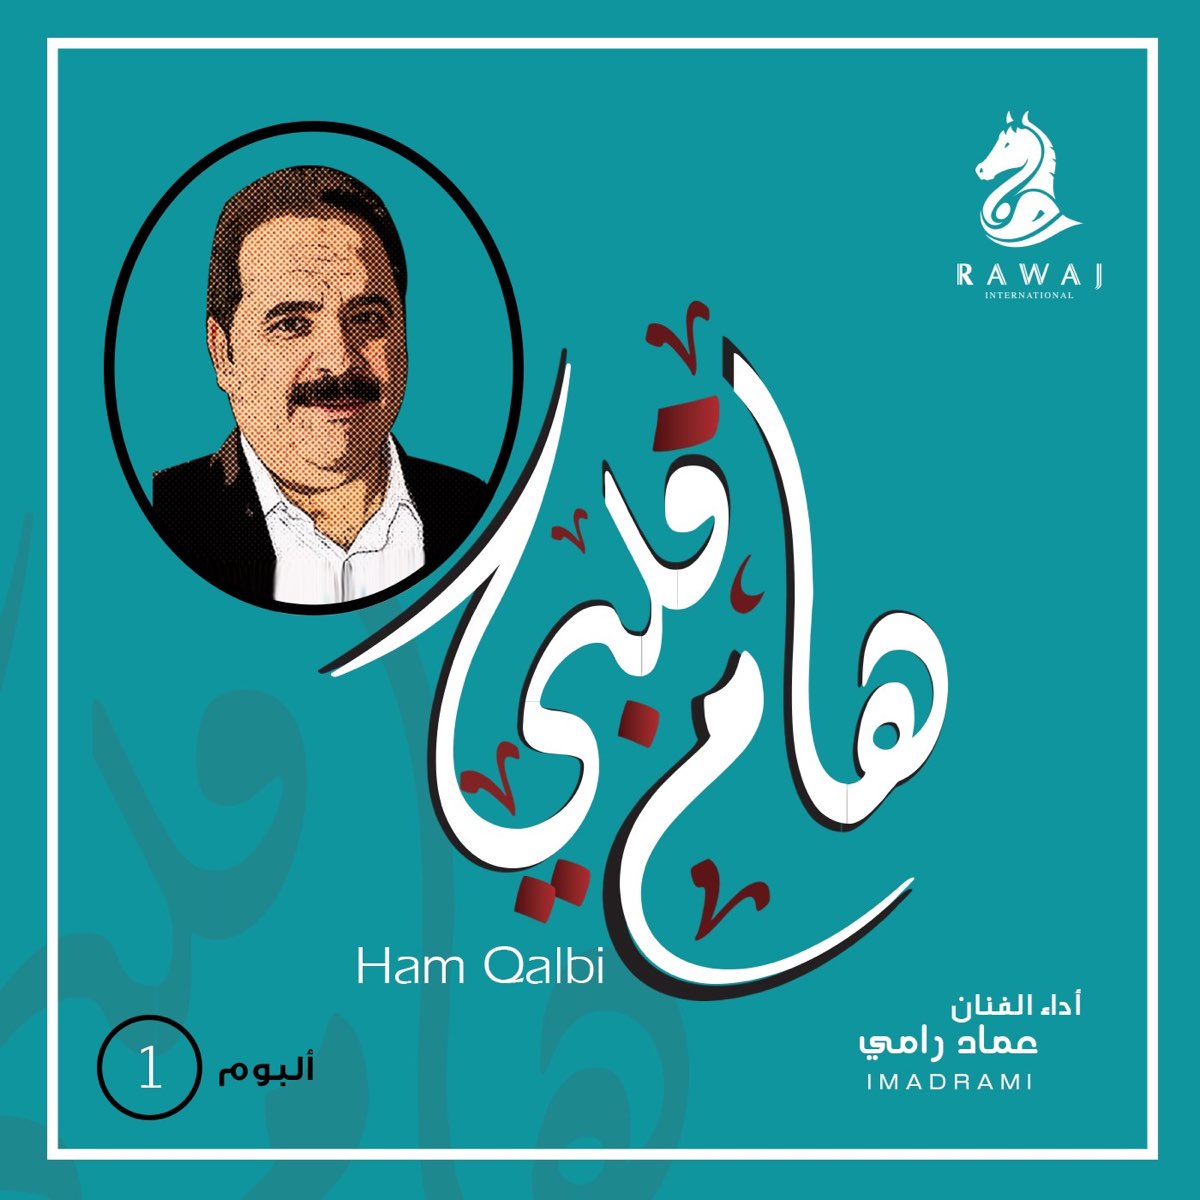 هام قلبي - ألبوم من عماد رامي - Apple Music